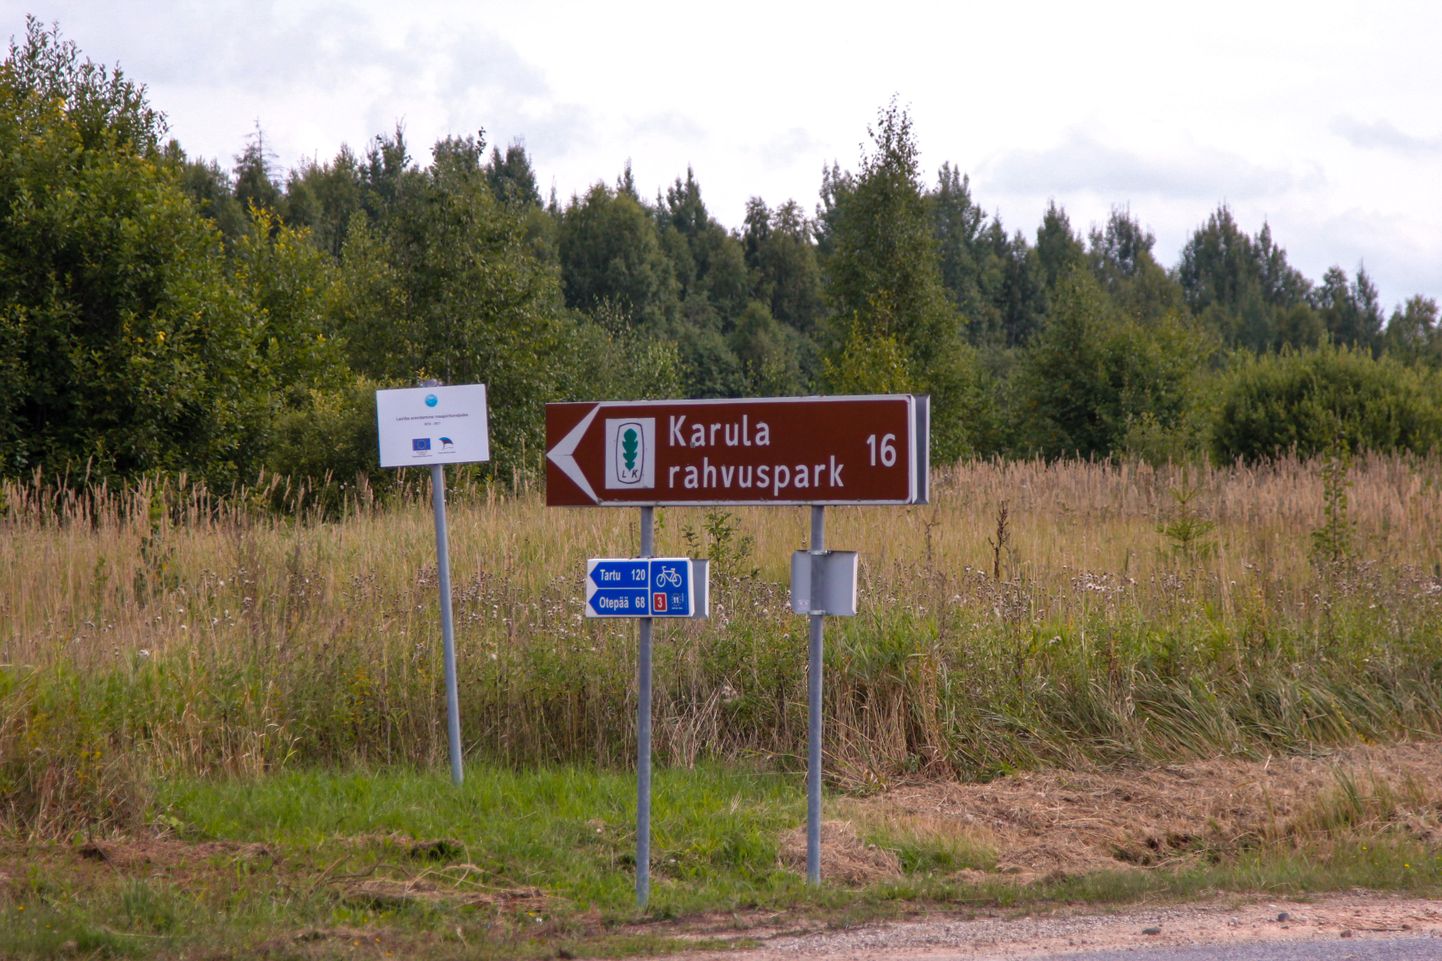 Karula rahvuspargi külastuskeskuses toimub Eesti looduse päeva tähistamine.